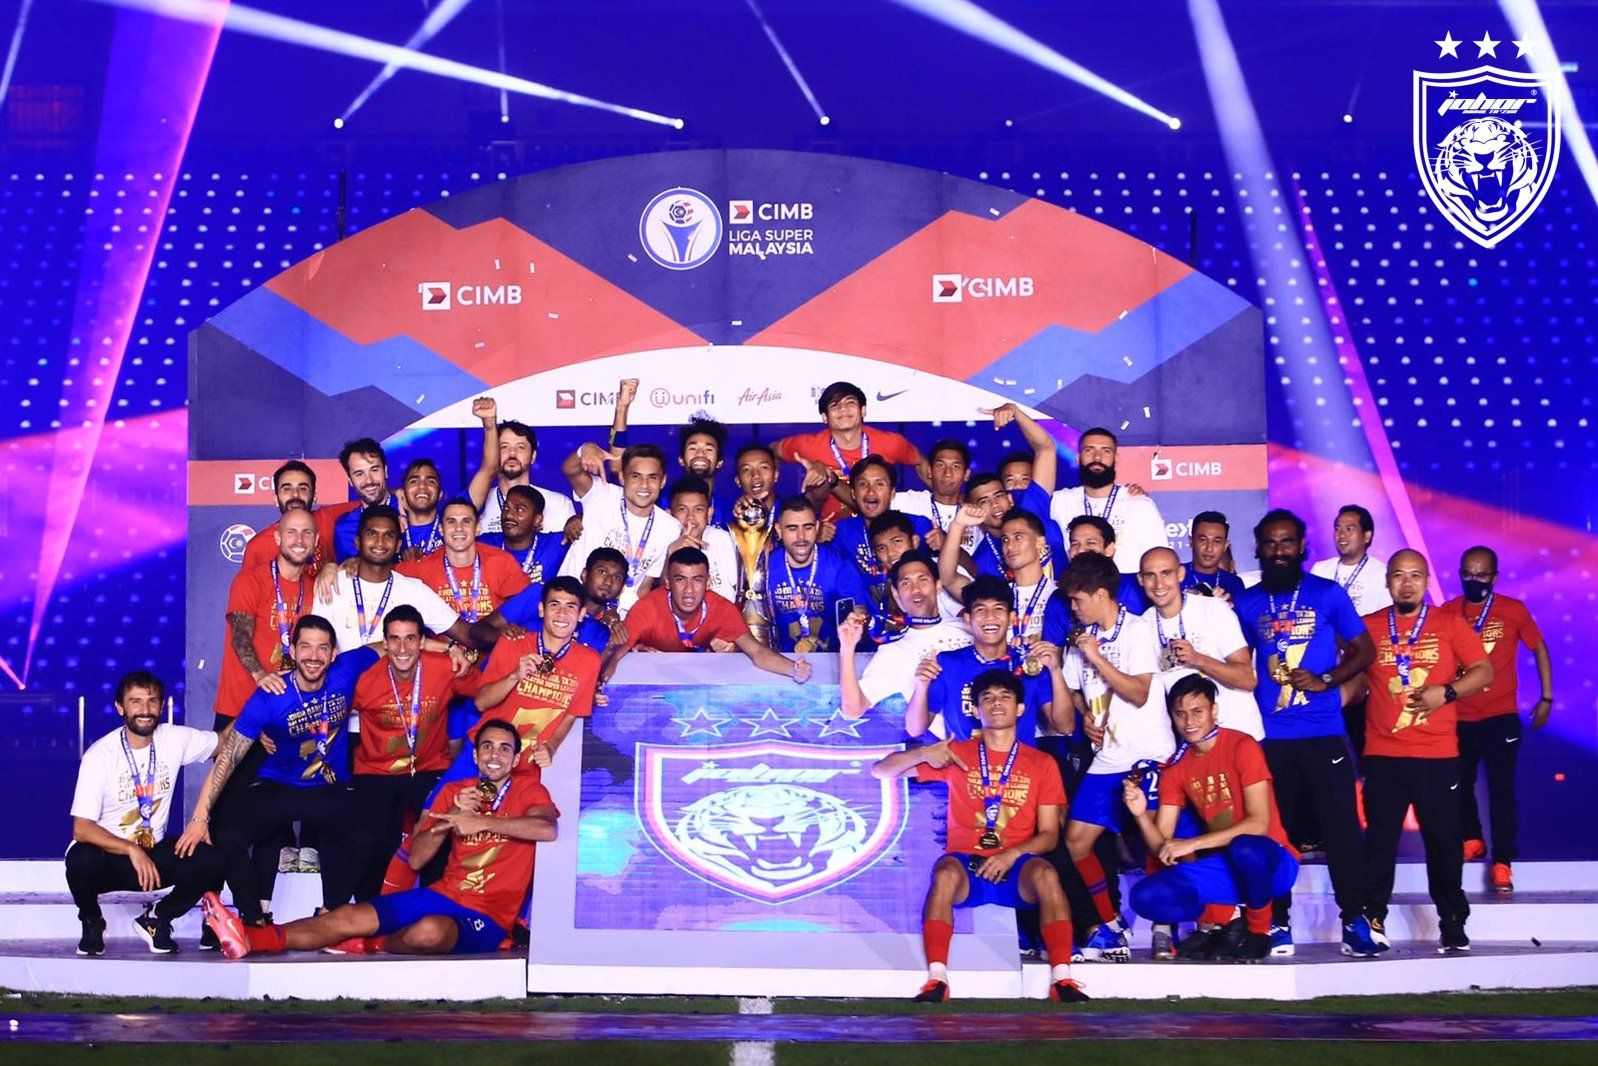 Johor Darul Takzim resmi mengangkat gelar juara Liga Super Malaysia 2020 sekaligus menjadi gelar yang mereka raih selama tujuh kali berturut-turut.